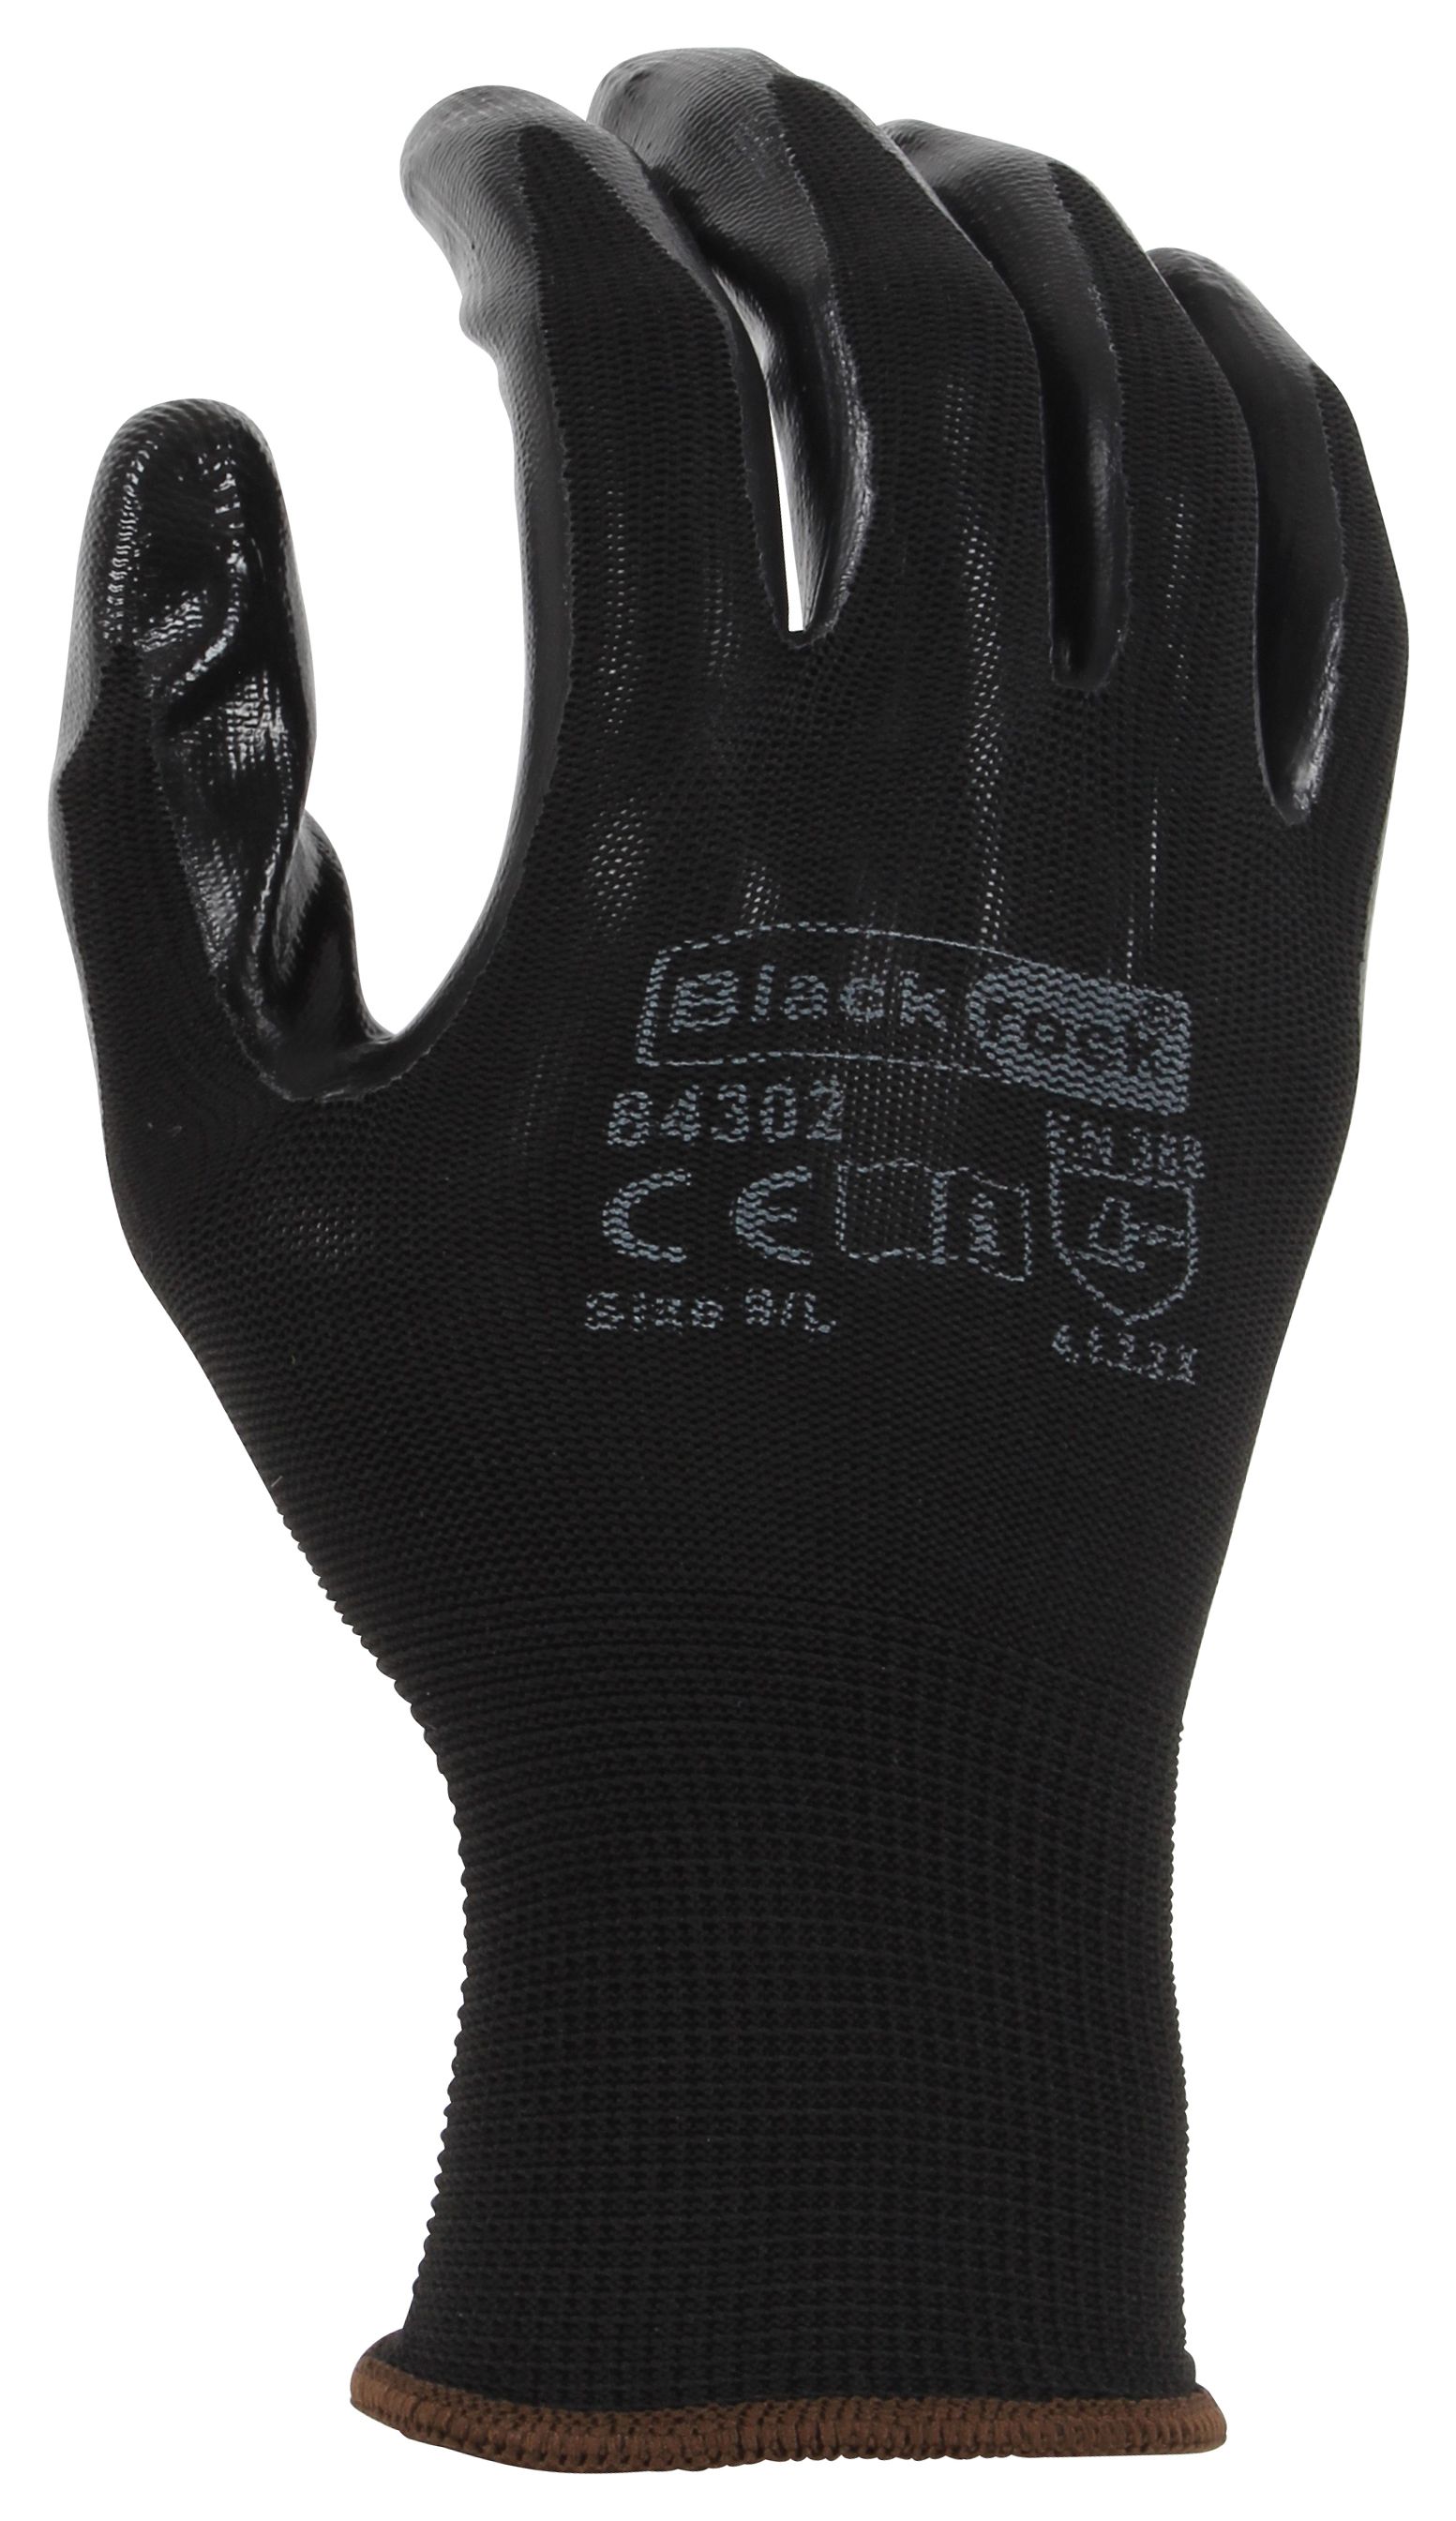 Blackrock Super Grip Black Nitrile Gloves - Size L/9